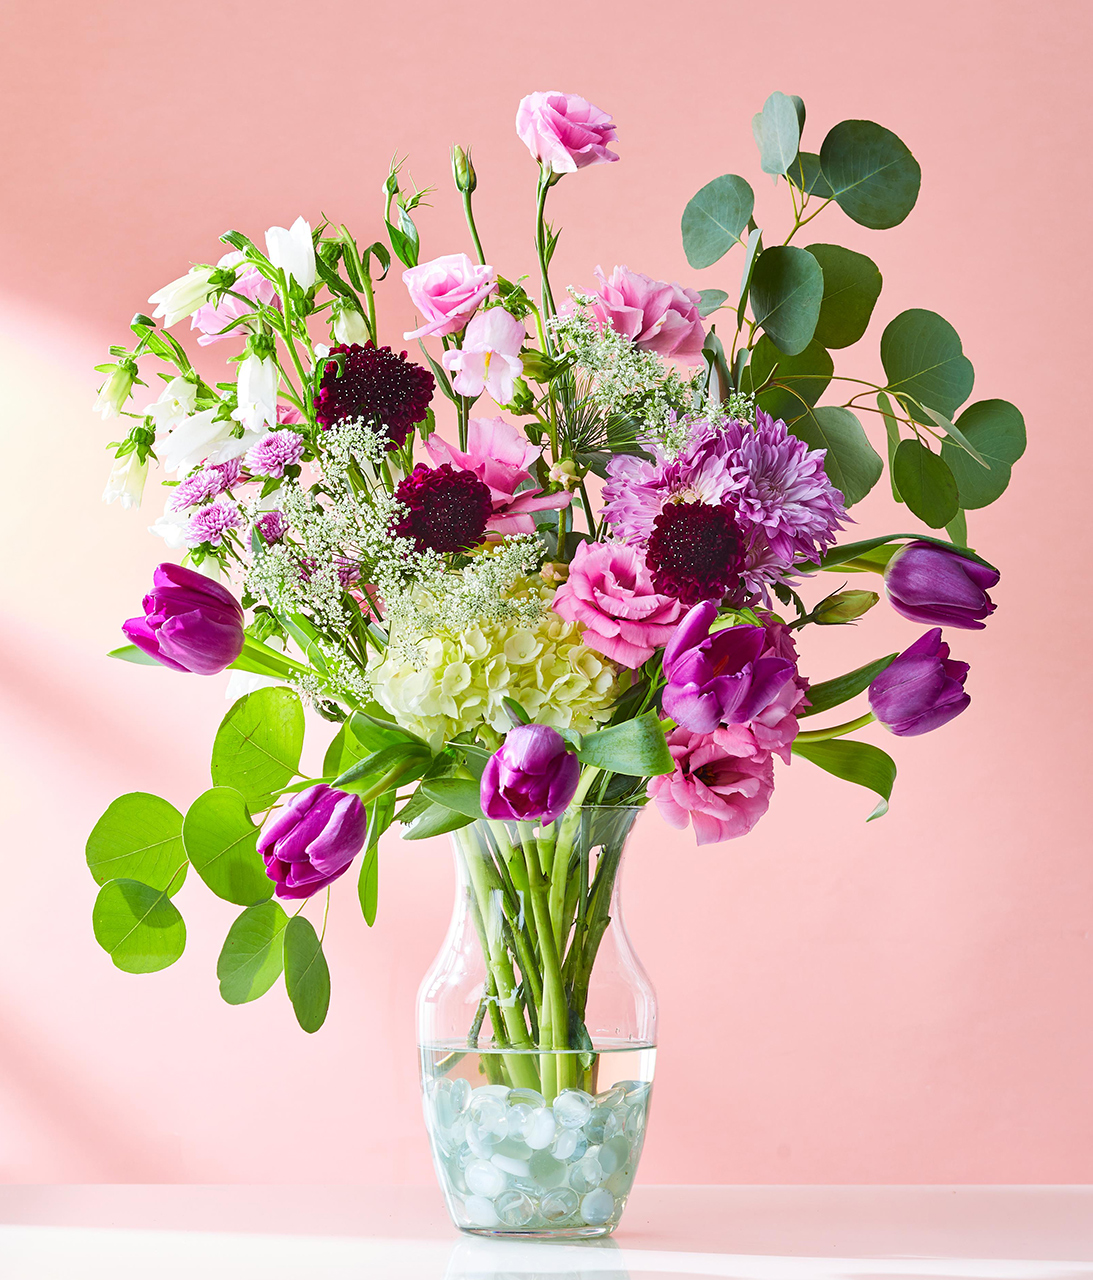 Pictures Of Floral Bouquets - KibrisPDR